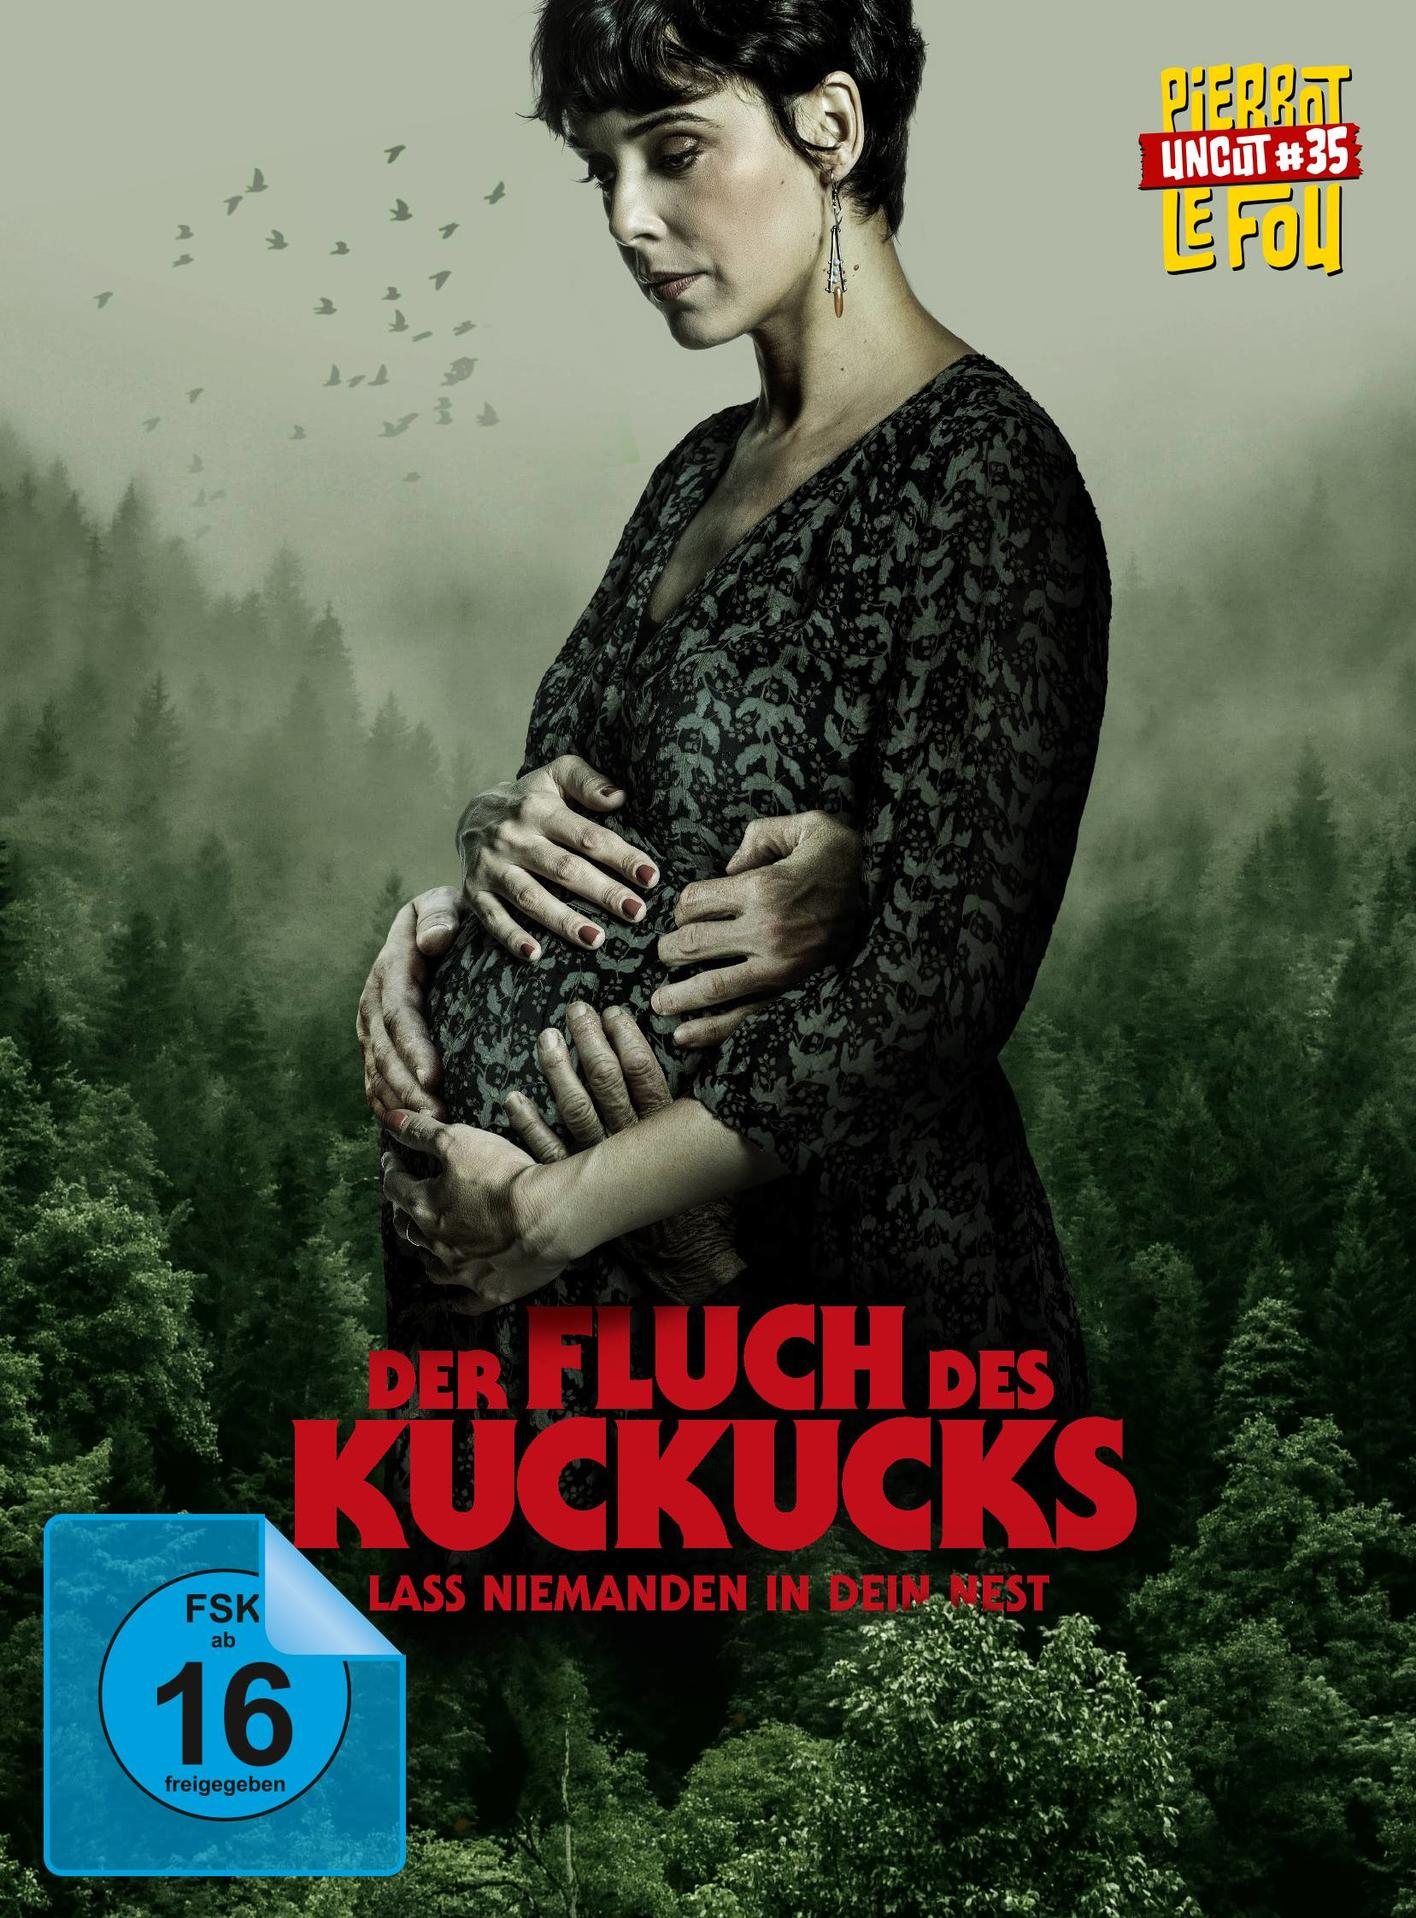 Blu-ray Kuckucks Nest - Fluch dein niemanden des Der + in DVD Lass